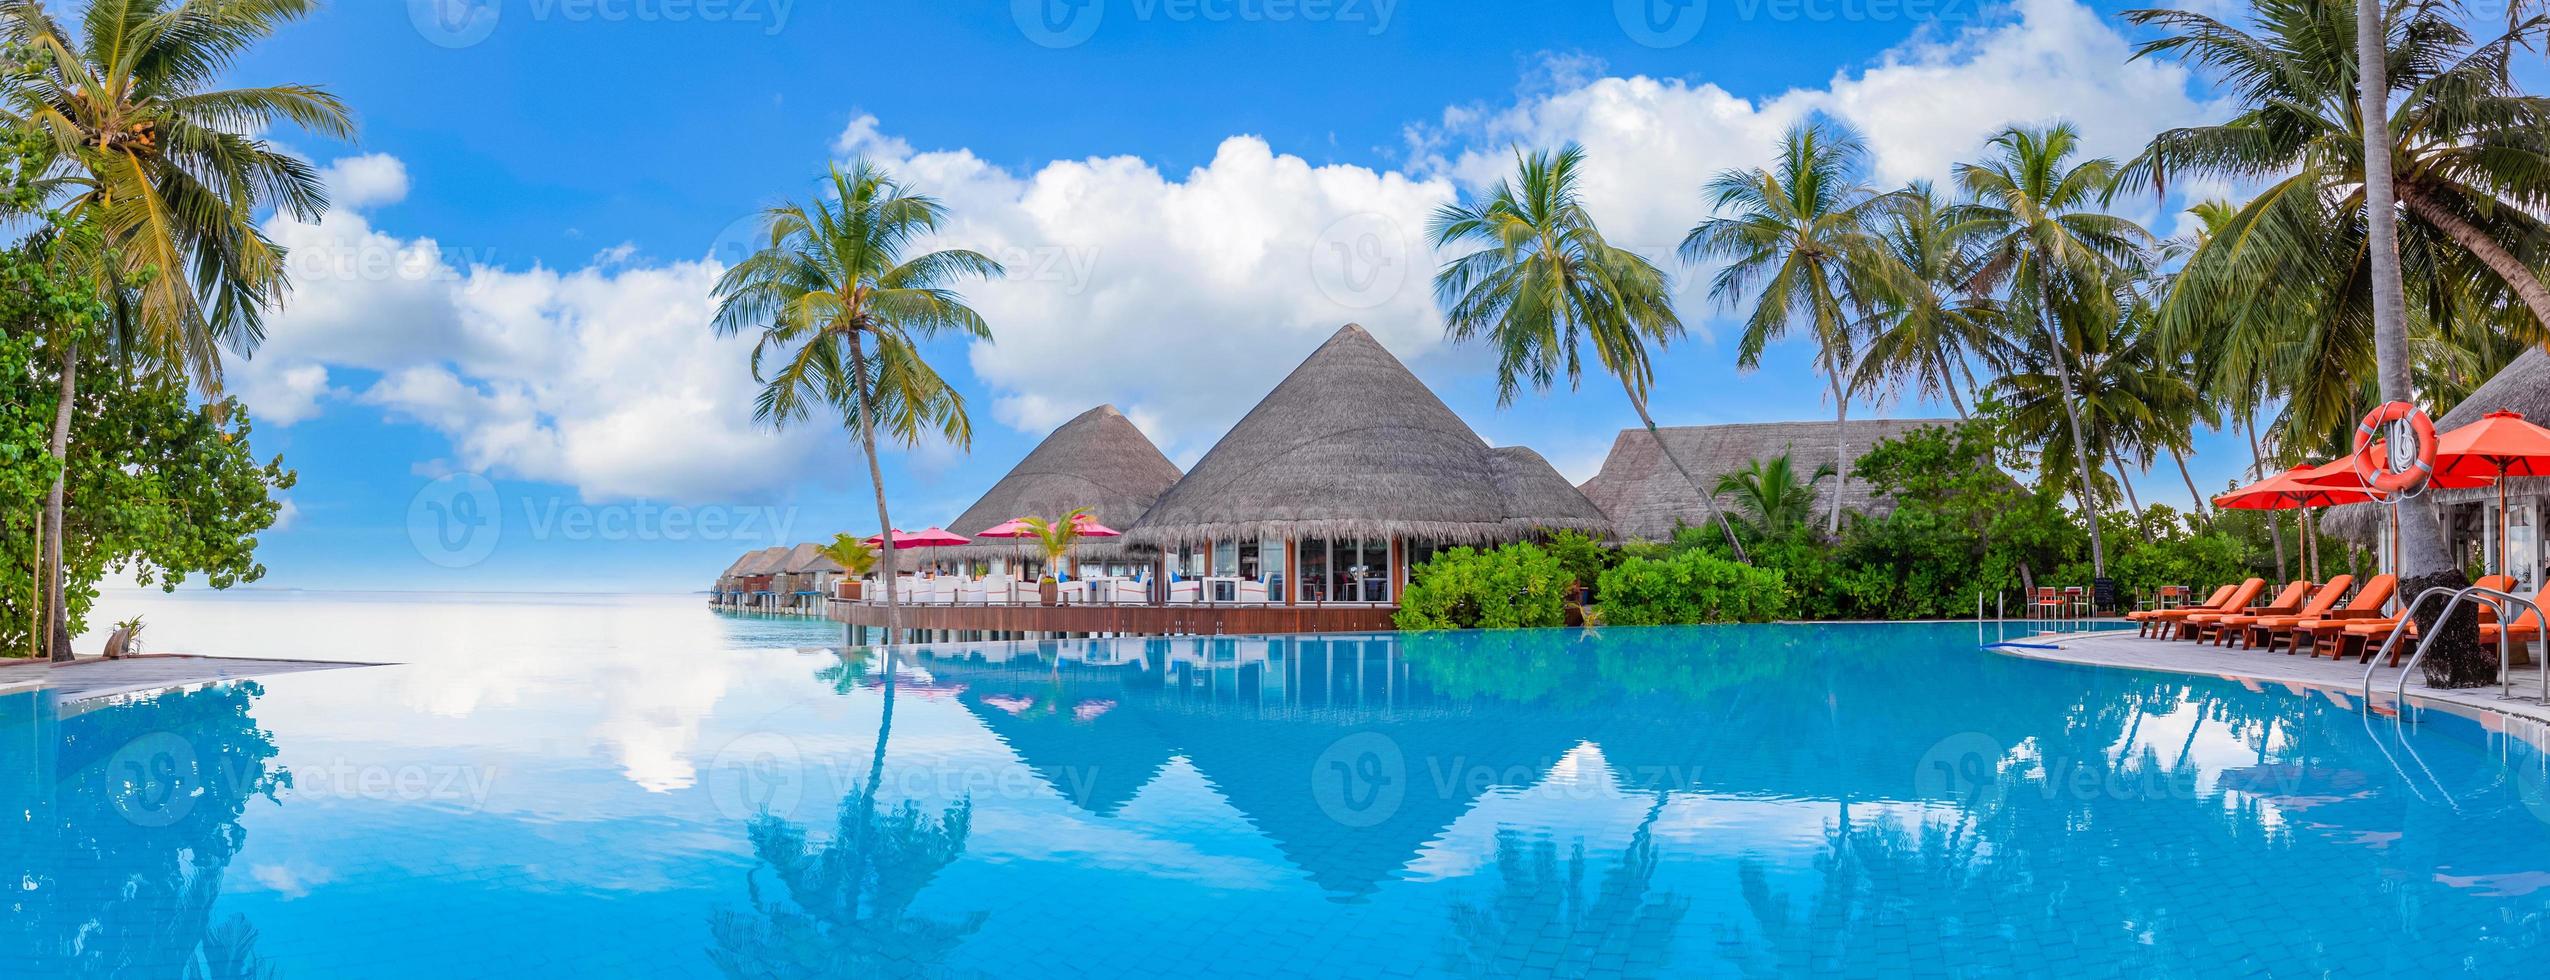 paesaggio del turismo all'aperto. lussuoso resort sulla spiaggia con piscina e sedie a sdraio o lettini ombrelloni con palme e cielo blu, orizzonte marino. l'isola estiva rilassa i viaggi e le vacanze idilliache foto